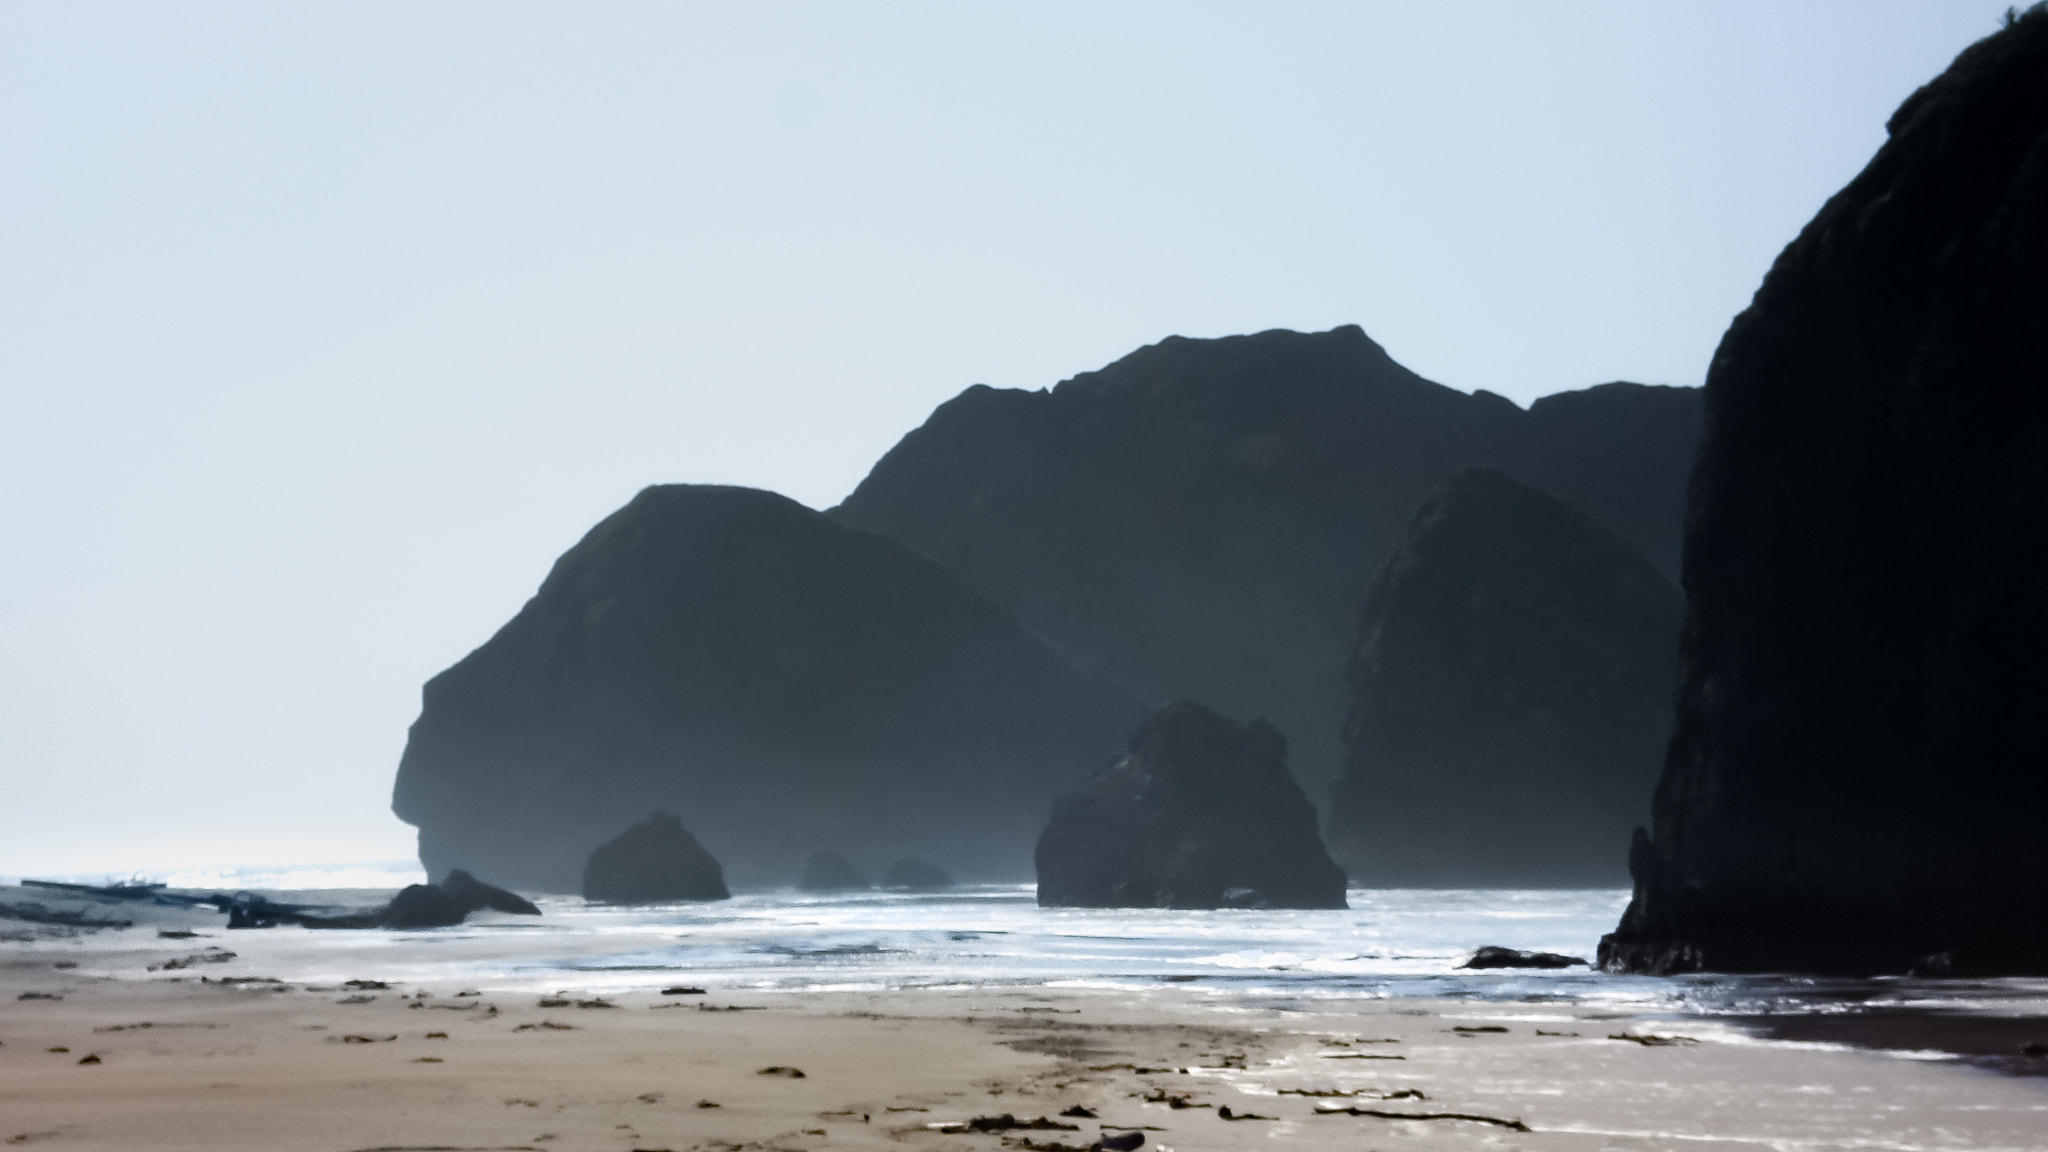 Sony DSC-W50 sample photo. Misty morning, rocky shore photography